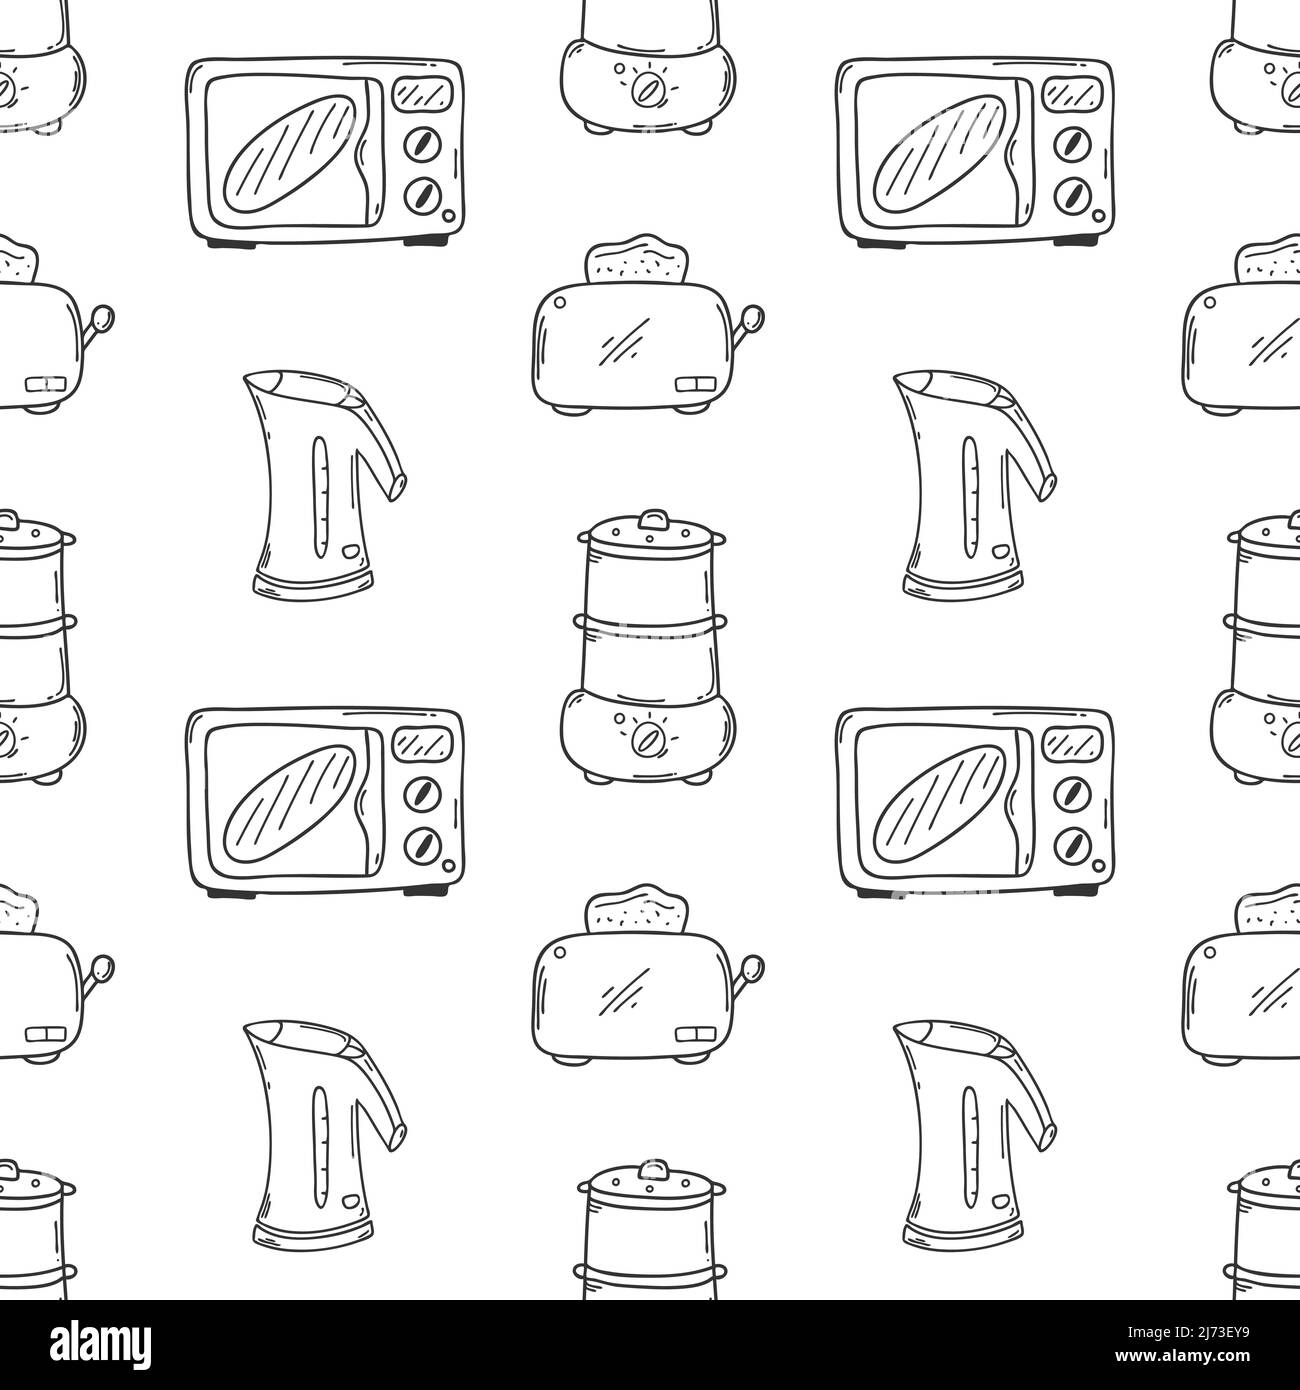 Nahtloses Muster mit Küchengeräten. Mikrowelle, Wasserkocher, Toaster, Dampfgarer. Ein monochromer Hintergrund mit einfachen, von Hand gezeichneten Umrissen von Doodle-Elementen. B Stock Vektor